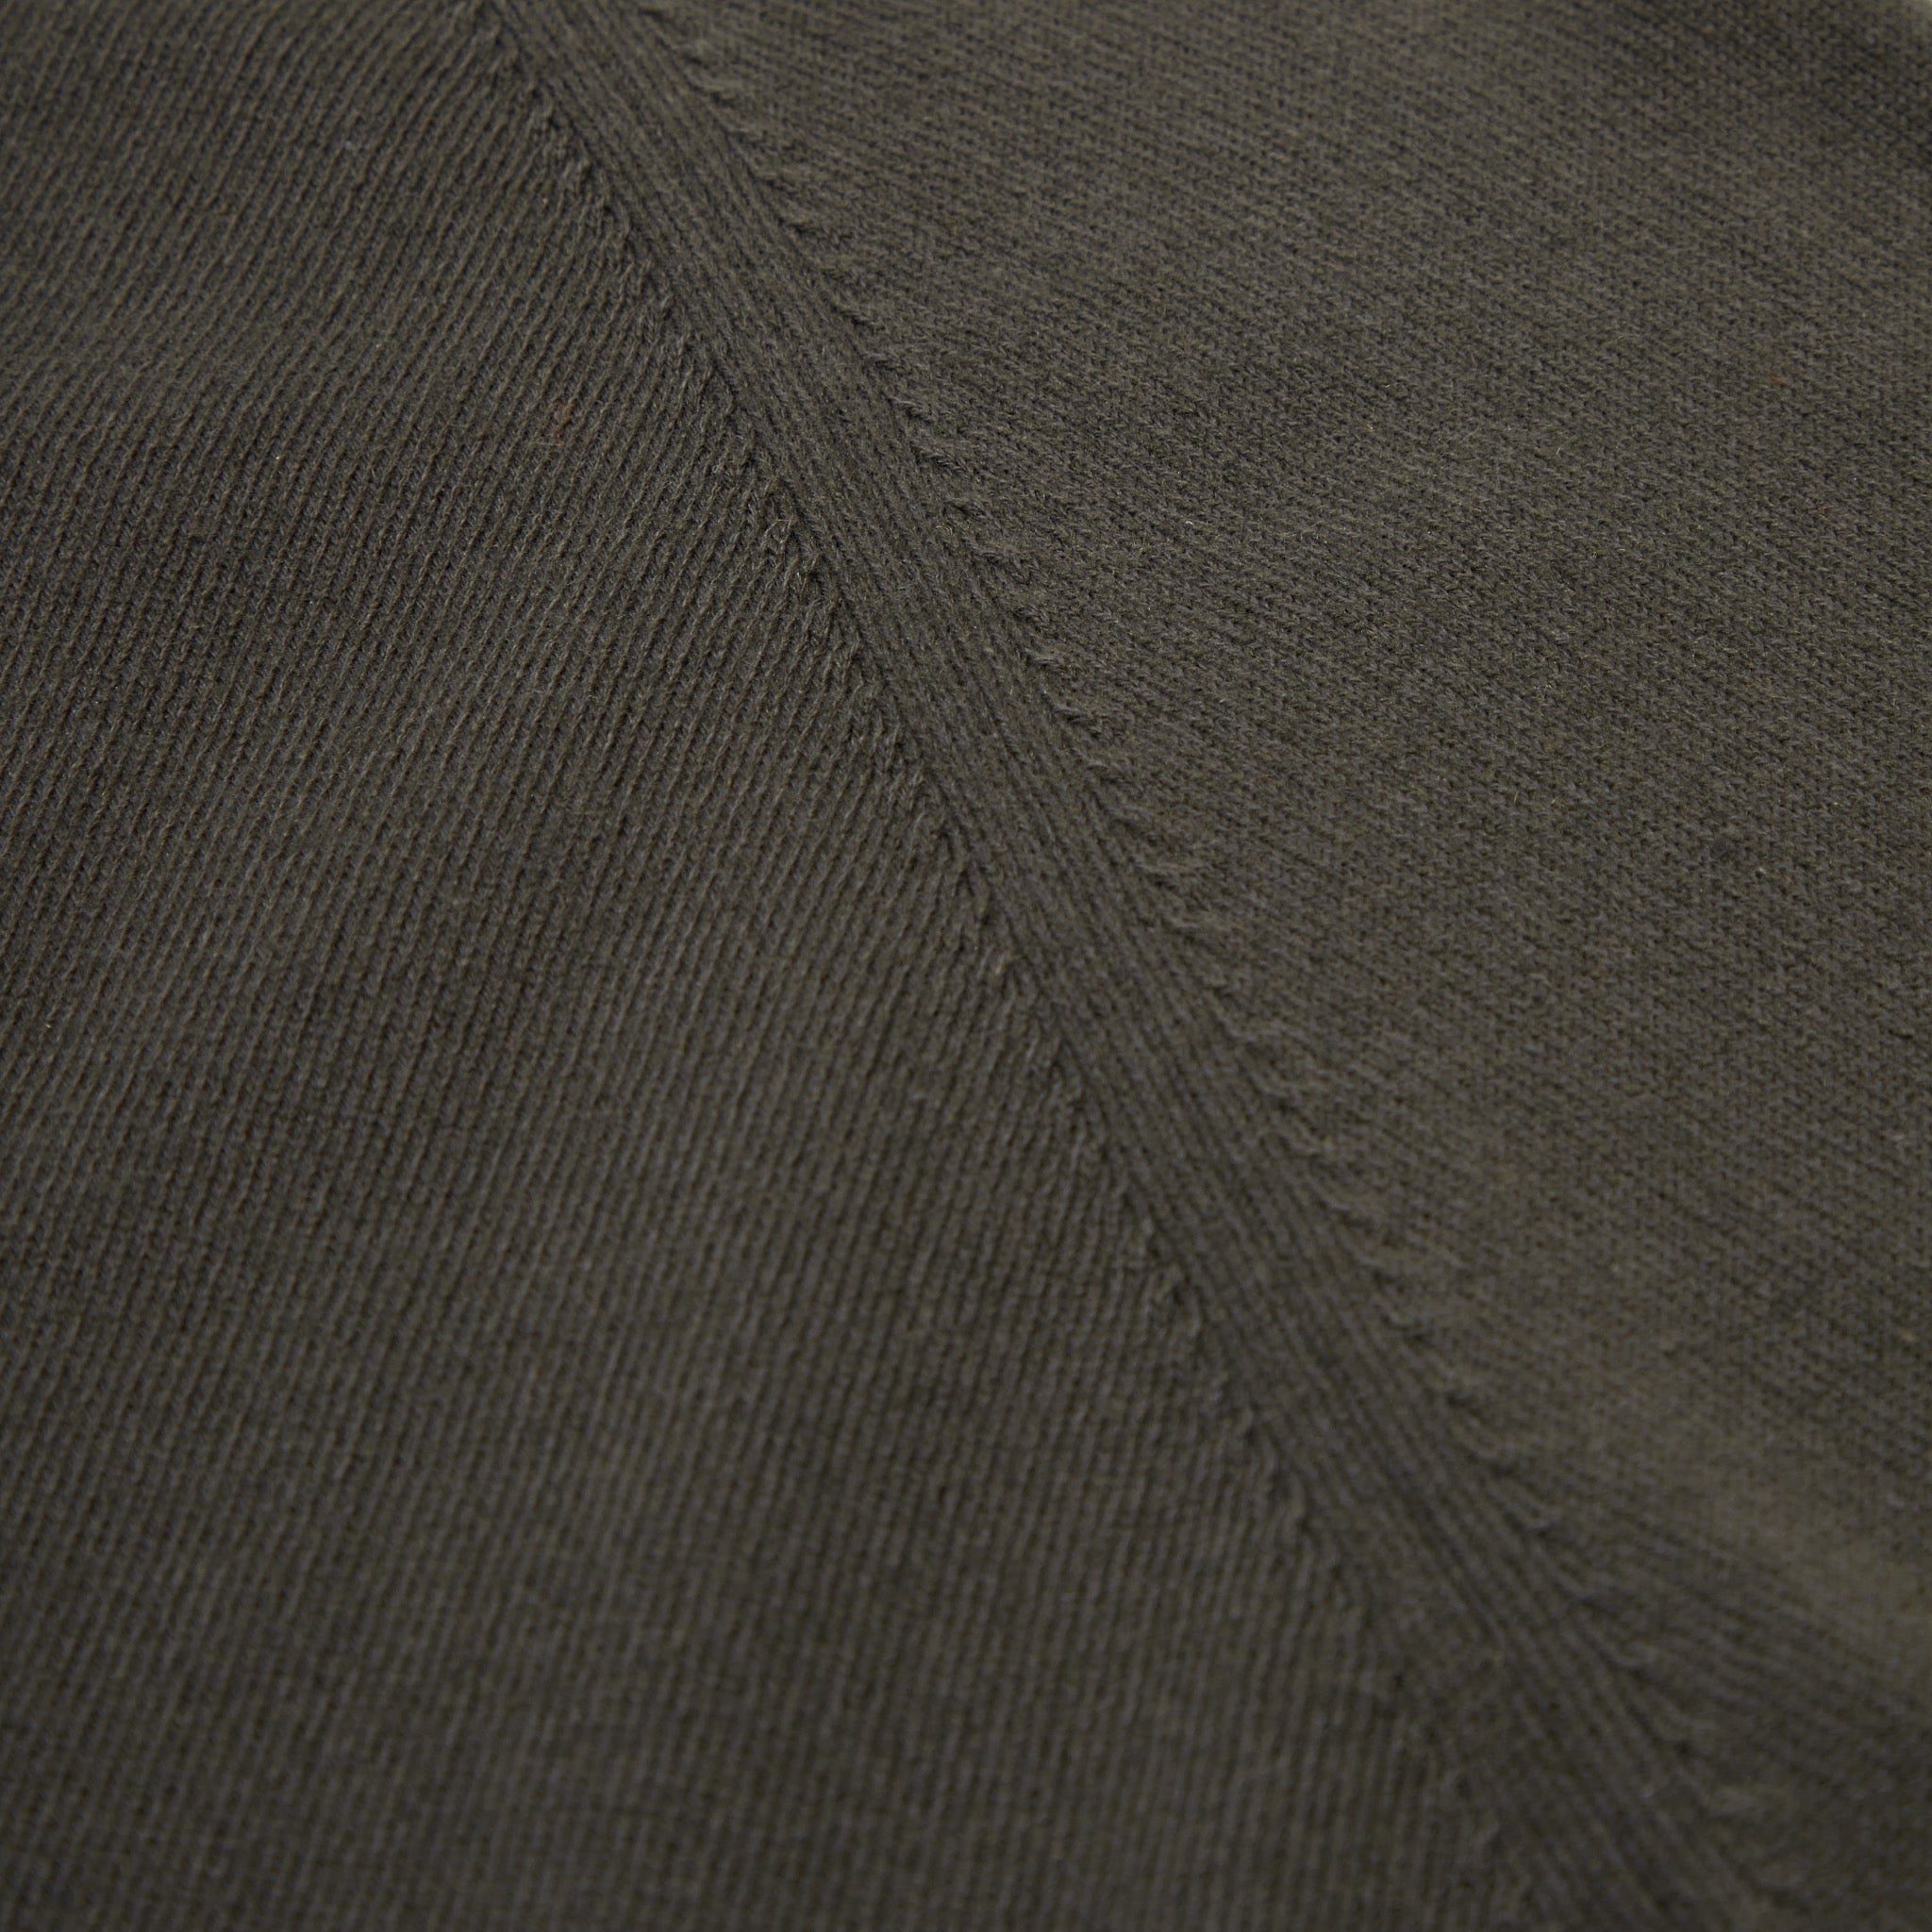 Cashmere cotton collegiate raglan sweatshirt in dark olive